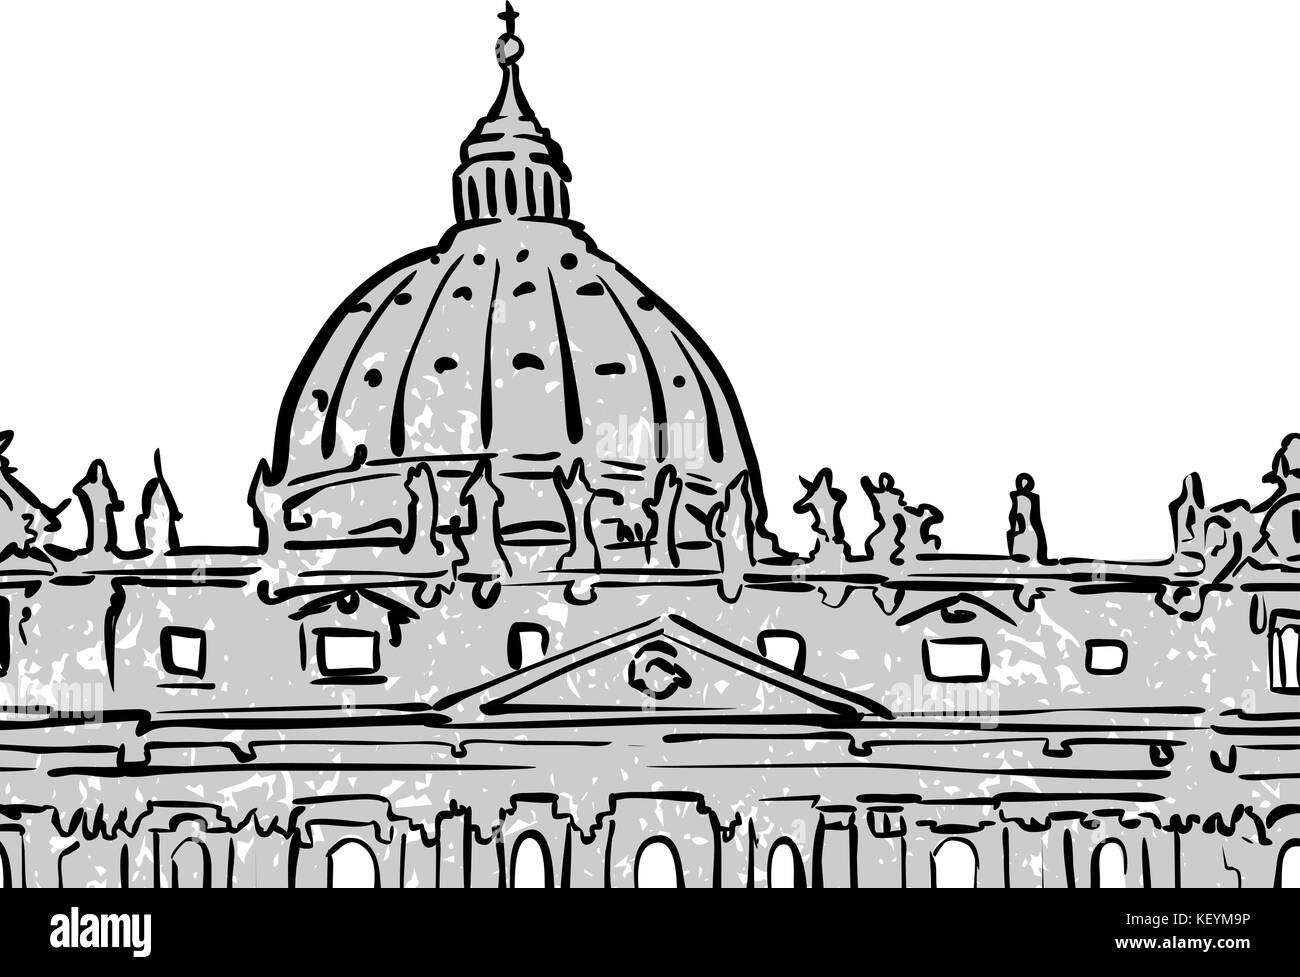 Vatikan berühmten Reisen Skizze. Lineart Zeichnung von Hand. Grußkarte Design, Vektor, Abbildung Stock Vektor